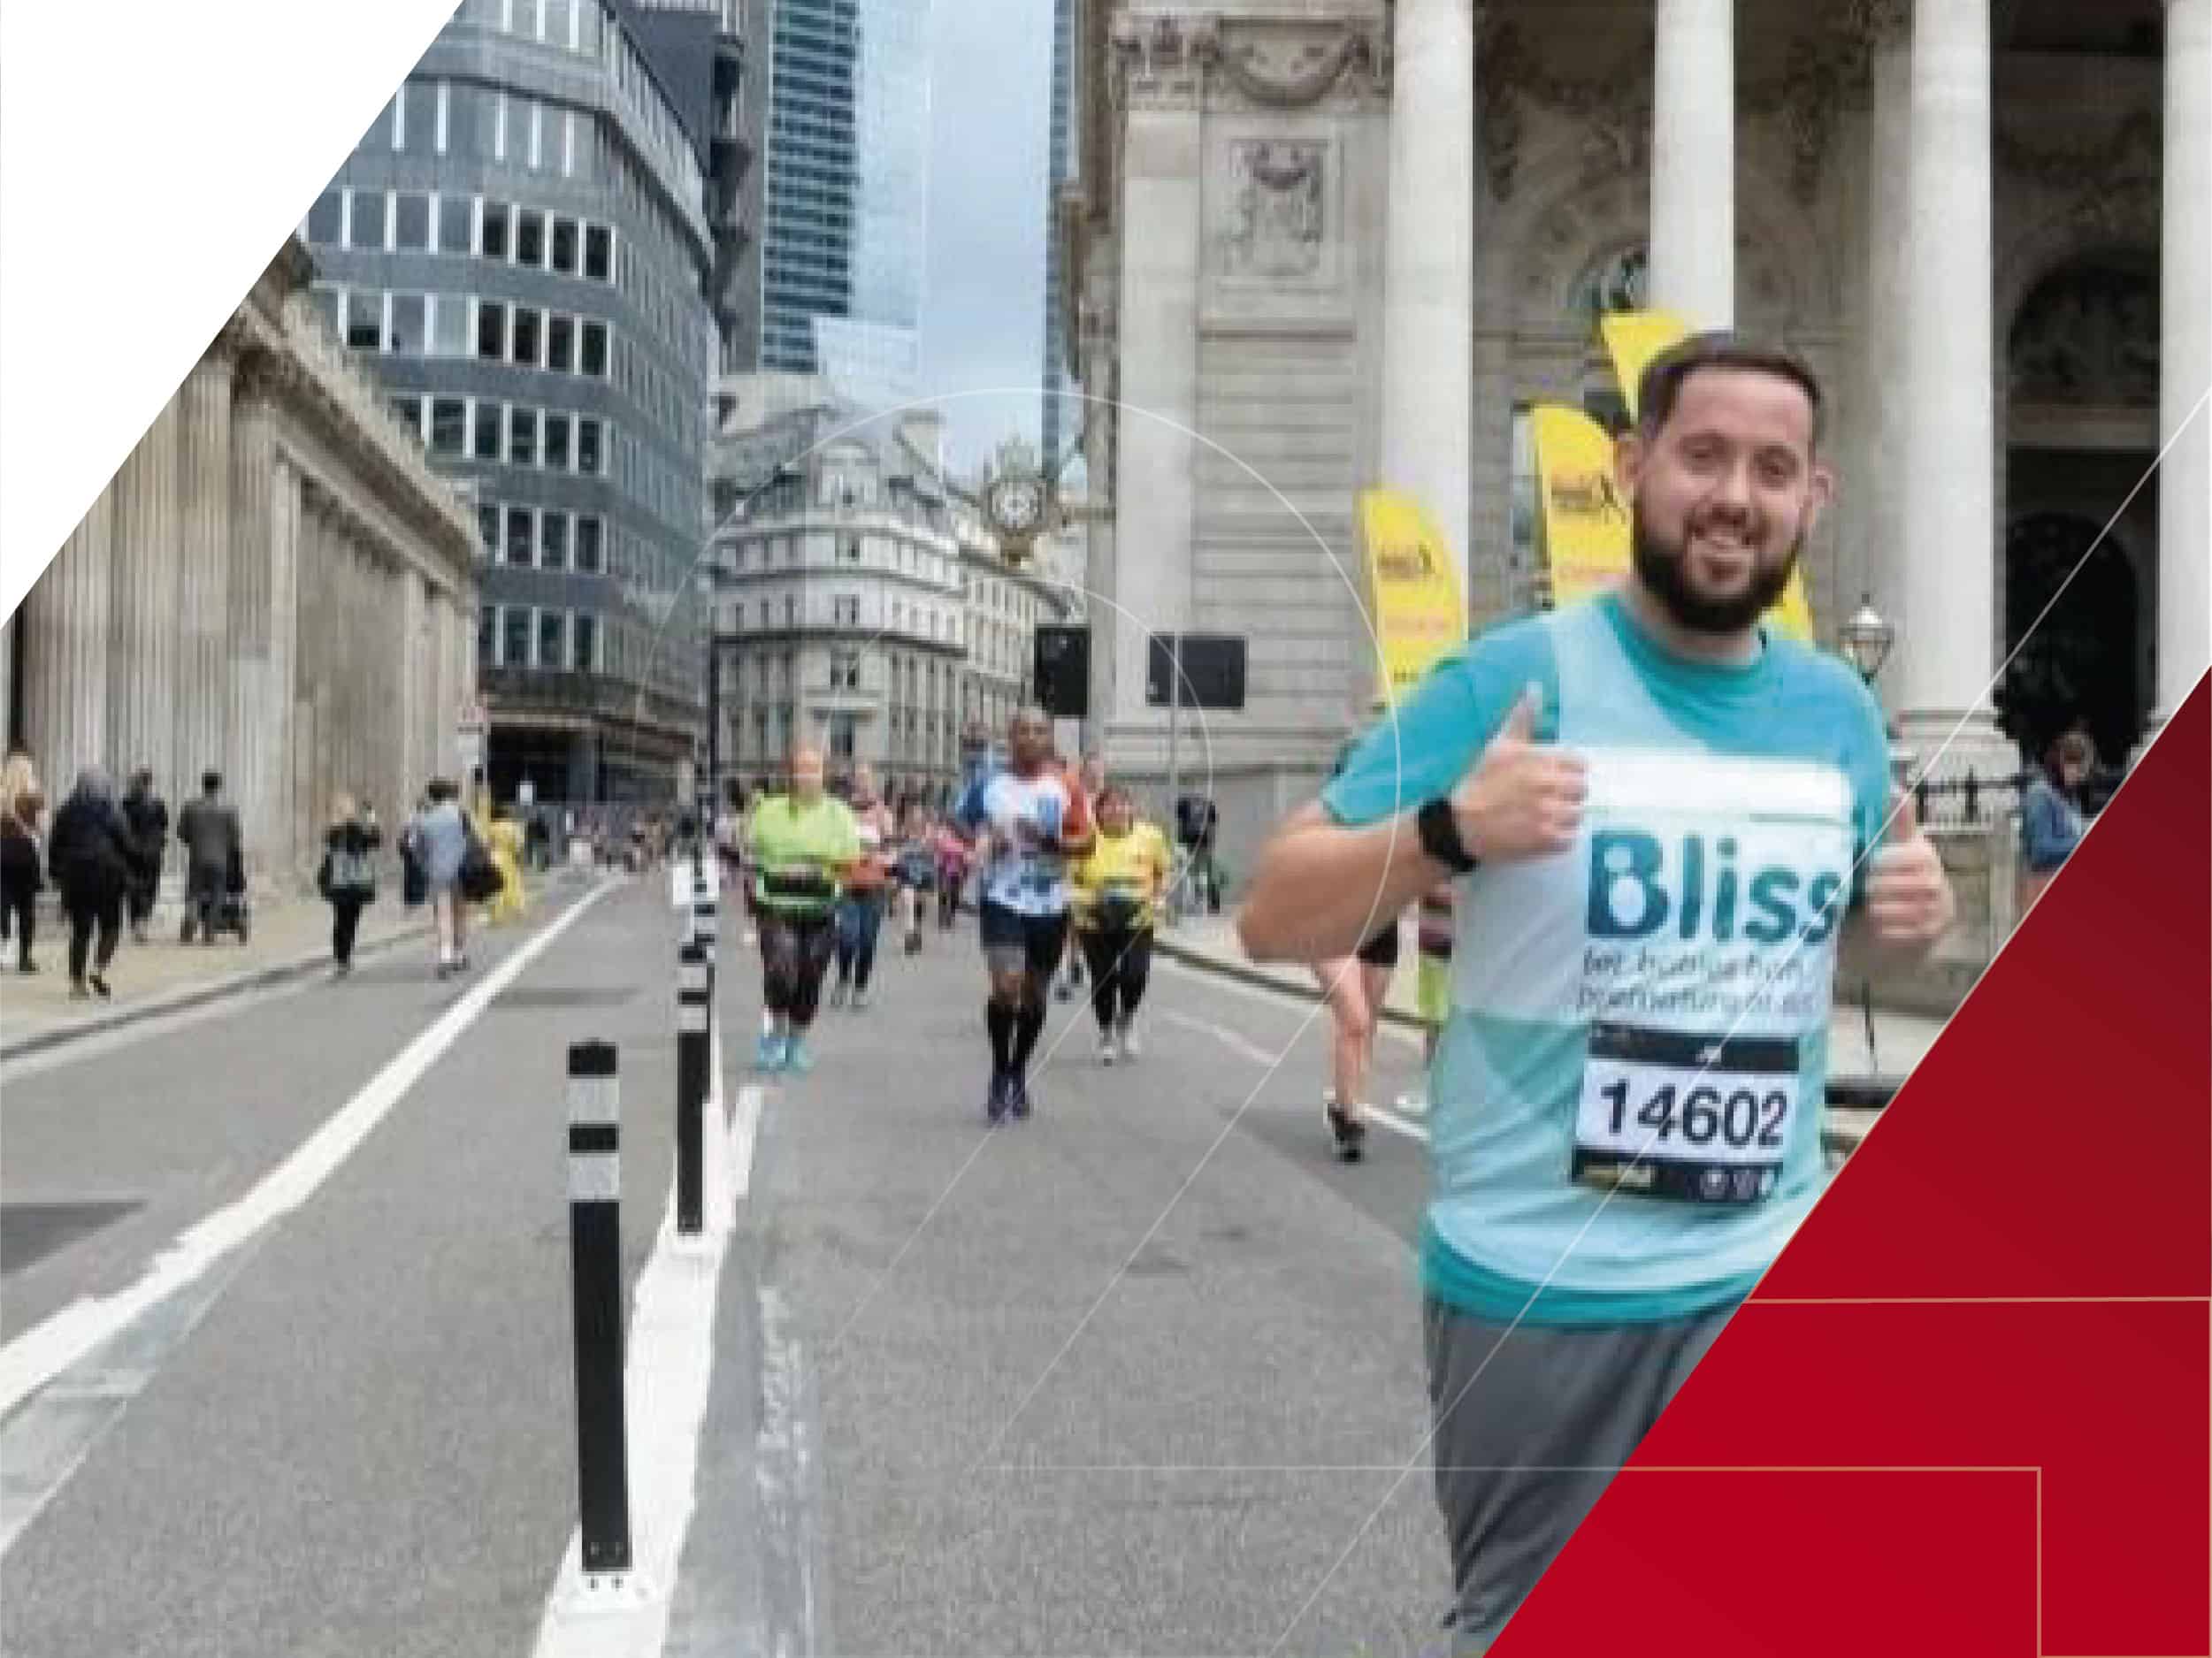 Laser 24 team member running the London marathon for charity